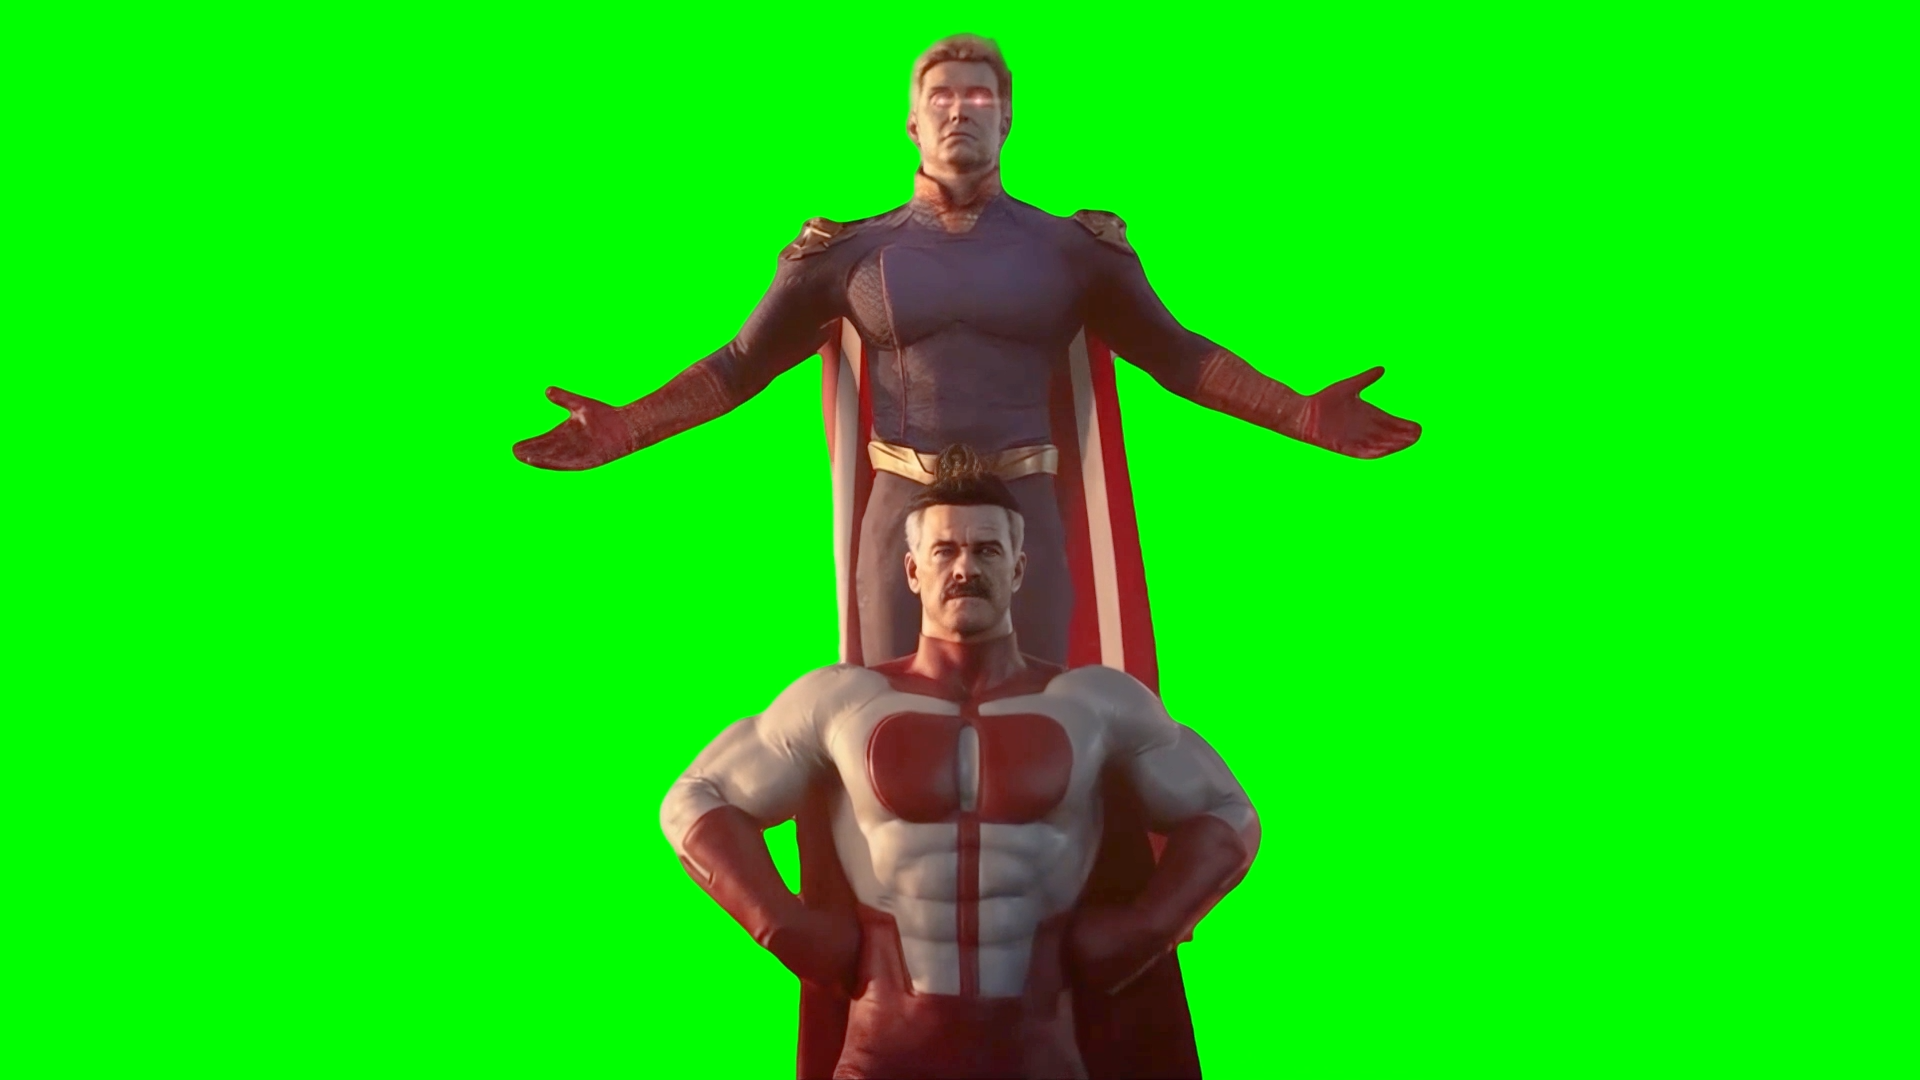 Omni-Man and Homelander duo posing together - Mortal Kombat 1 (Green Screen)